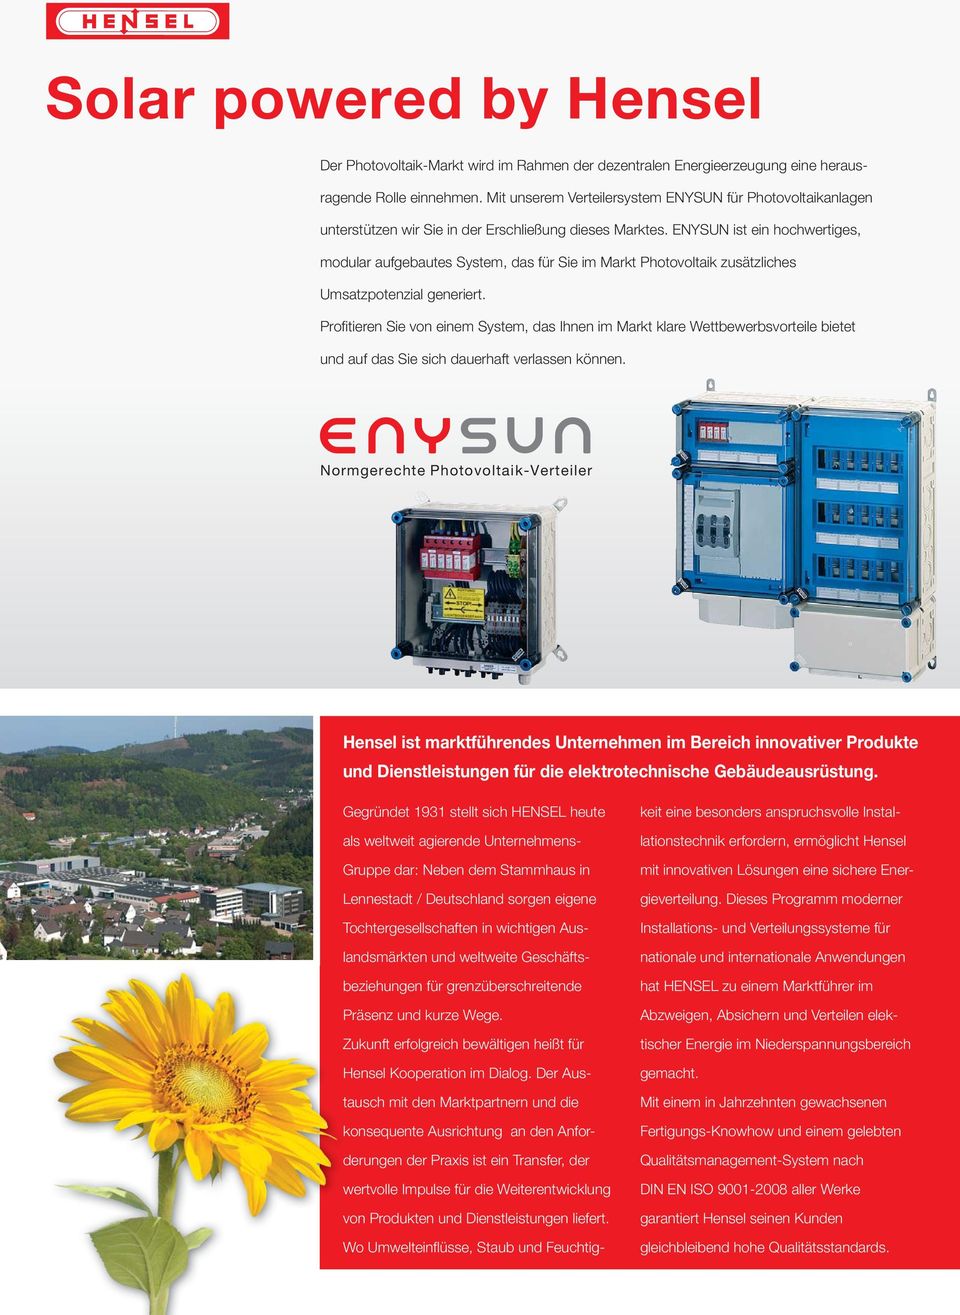 EYSU ist ein hochwertiges, modular aufgebautes System, das für Sie im Markt Photovoltaik zusätzliches Umsatzpotenzial generiert.